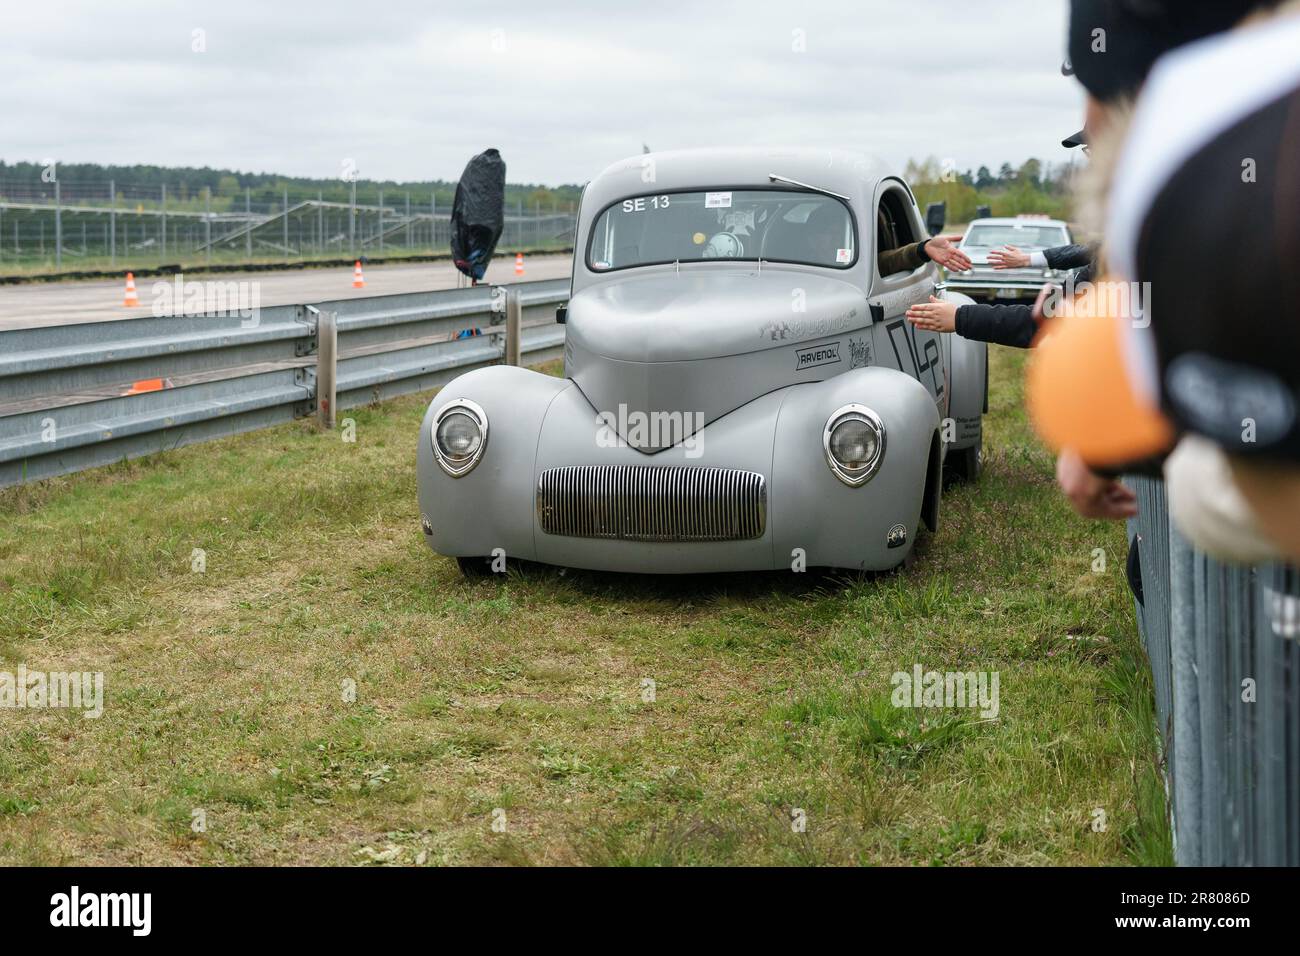 FINOWFURT, ALLEMAGNE - 06 MAI 2023: Le hotrod 1941 Willys coupé par Micha 'FullSpeed' Vogt sur la route. Fête de la course 2023. Ouverture de saison. Banque D'Images